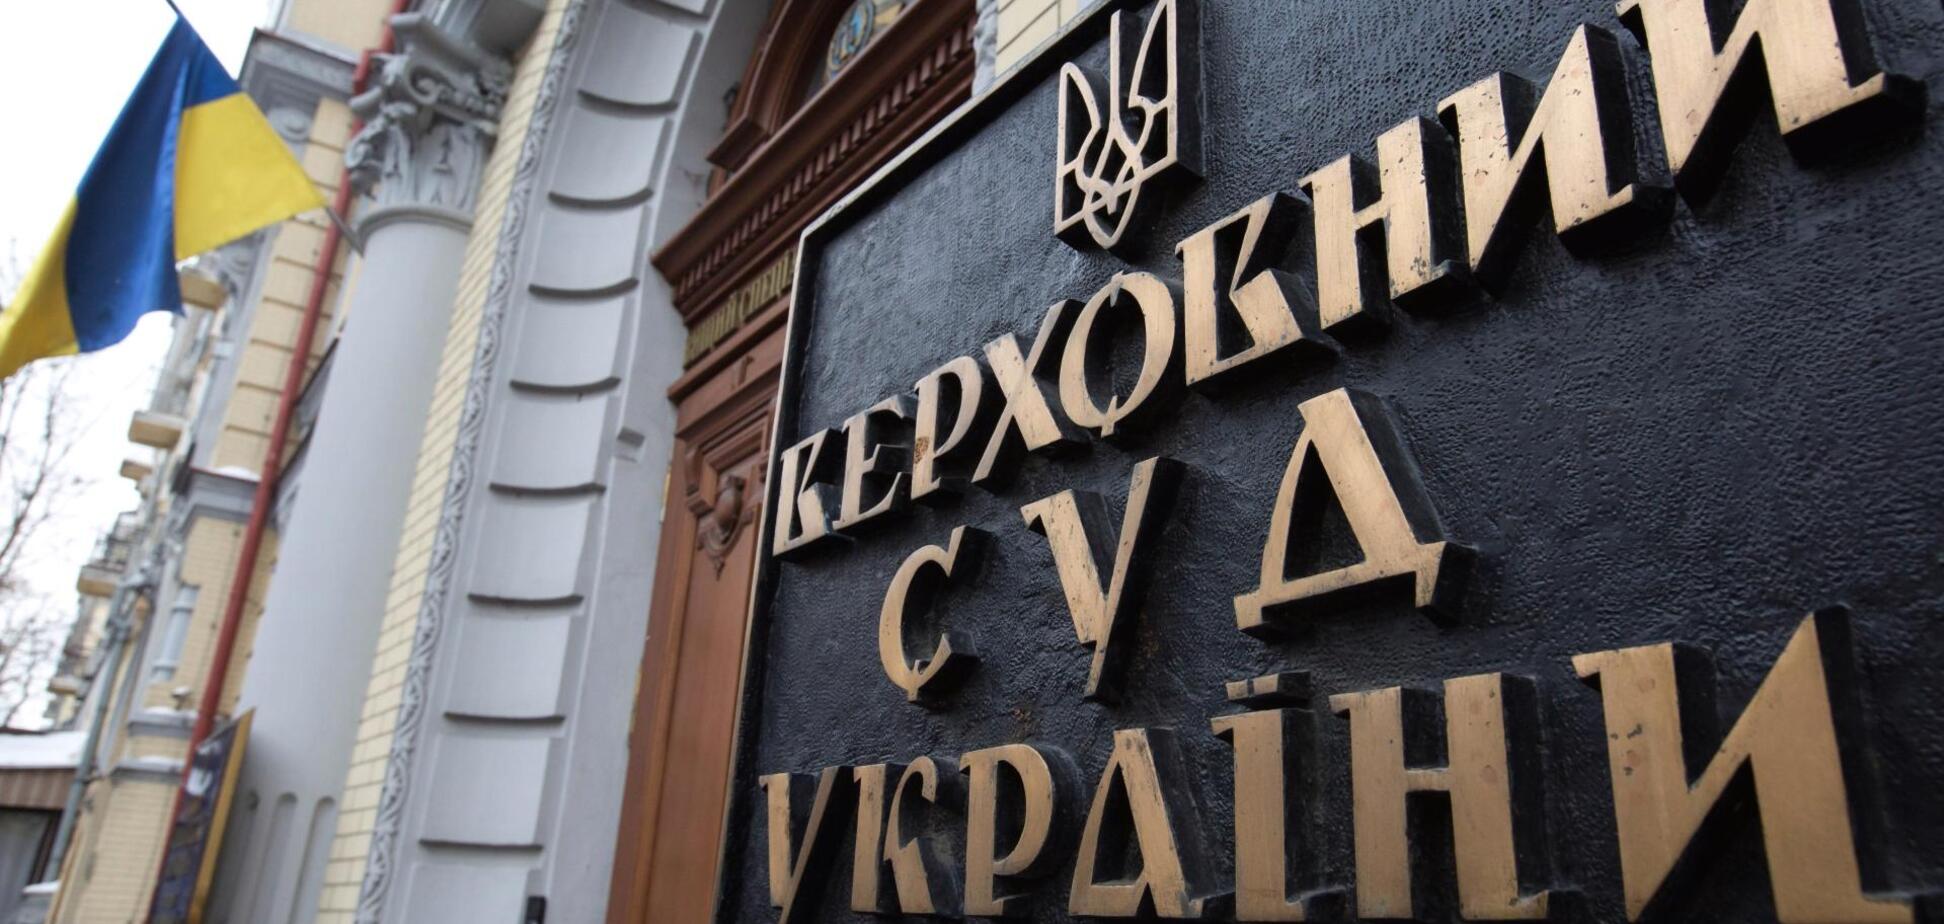 Ликвидация Верховного суда Украины признана неконституционной